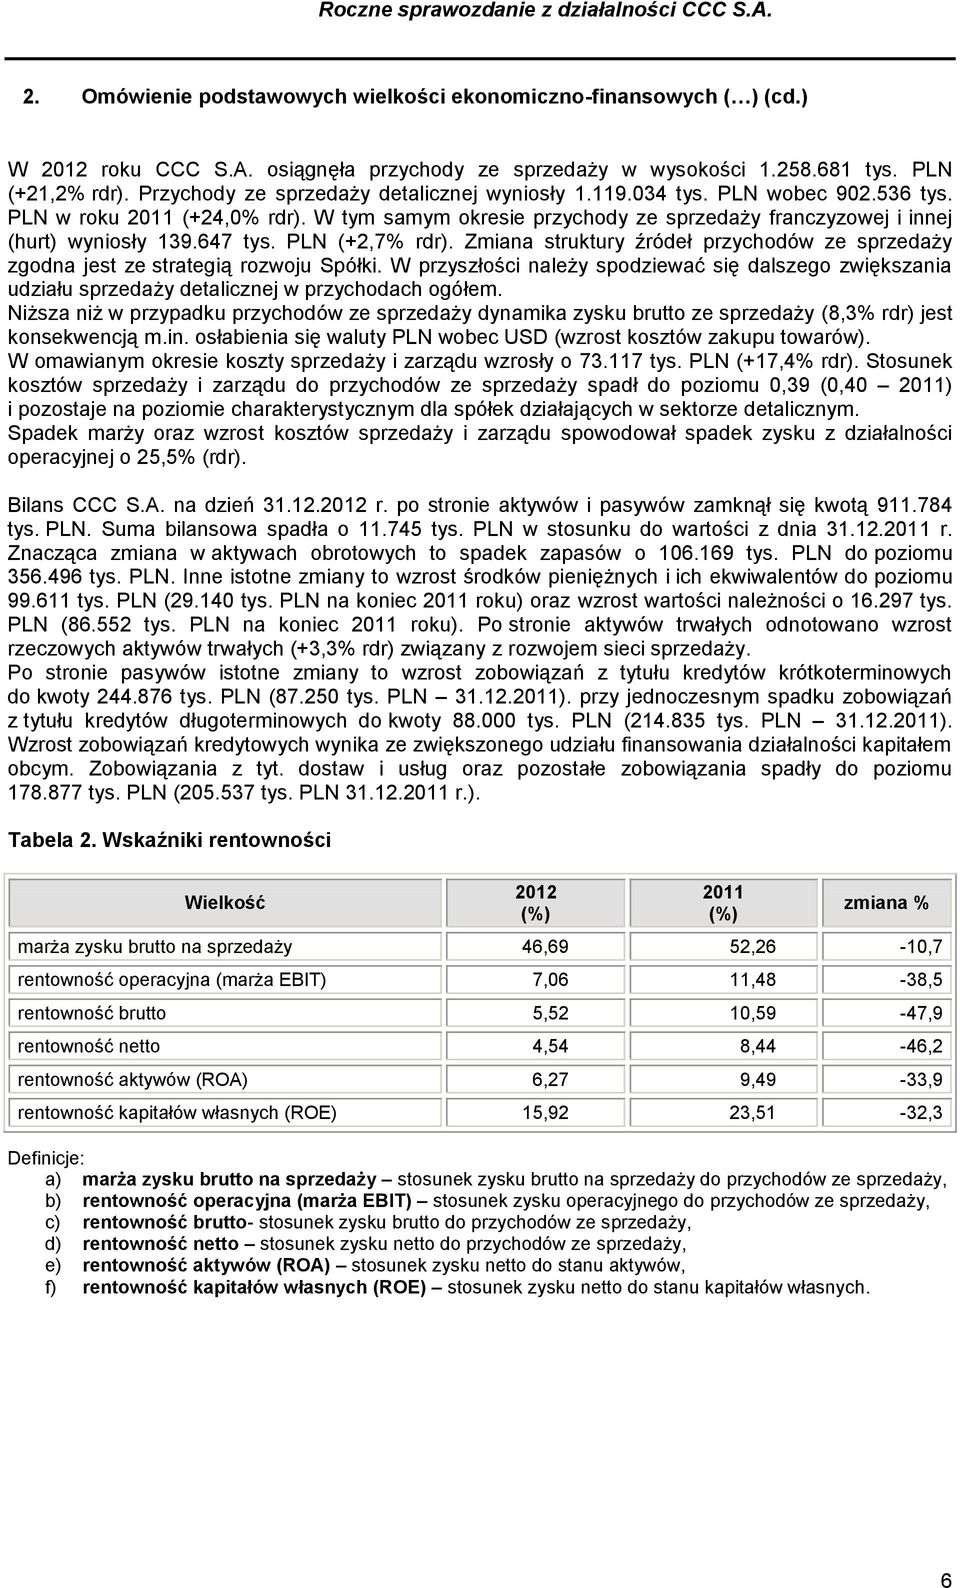 647 tys. PLN (+2,7% rdr). Zmiana struktury źródeł przychodów ze sprzedaży zgodna jest ze strategią rozwoju Spółki.